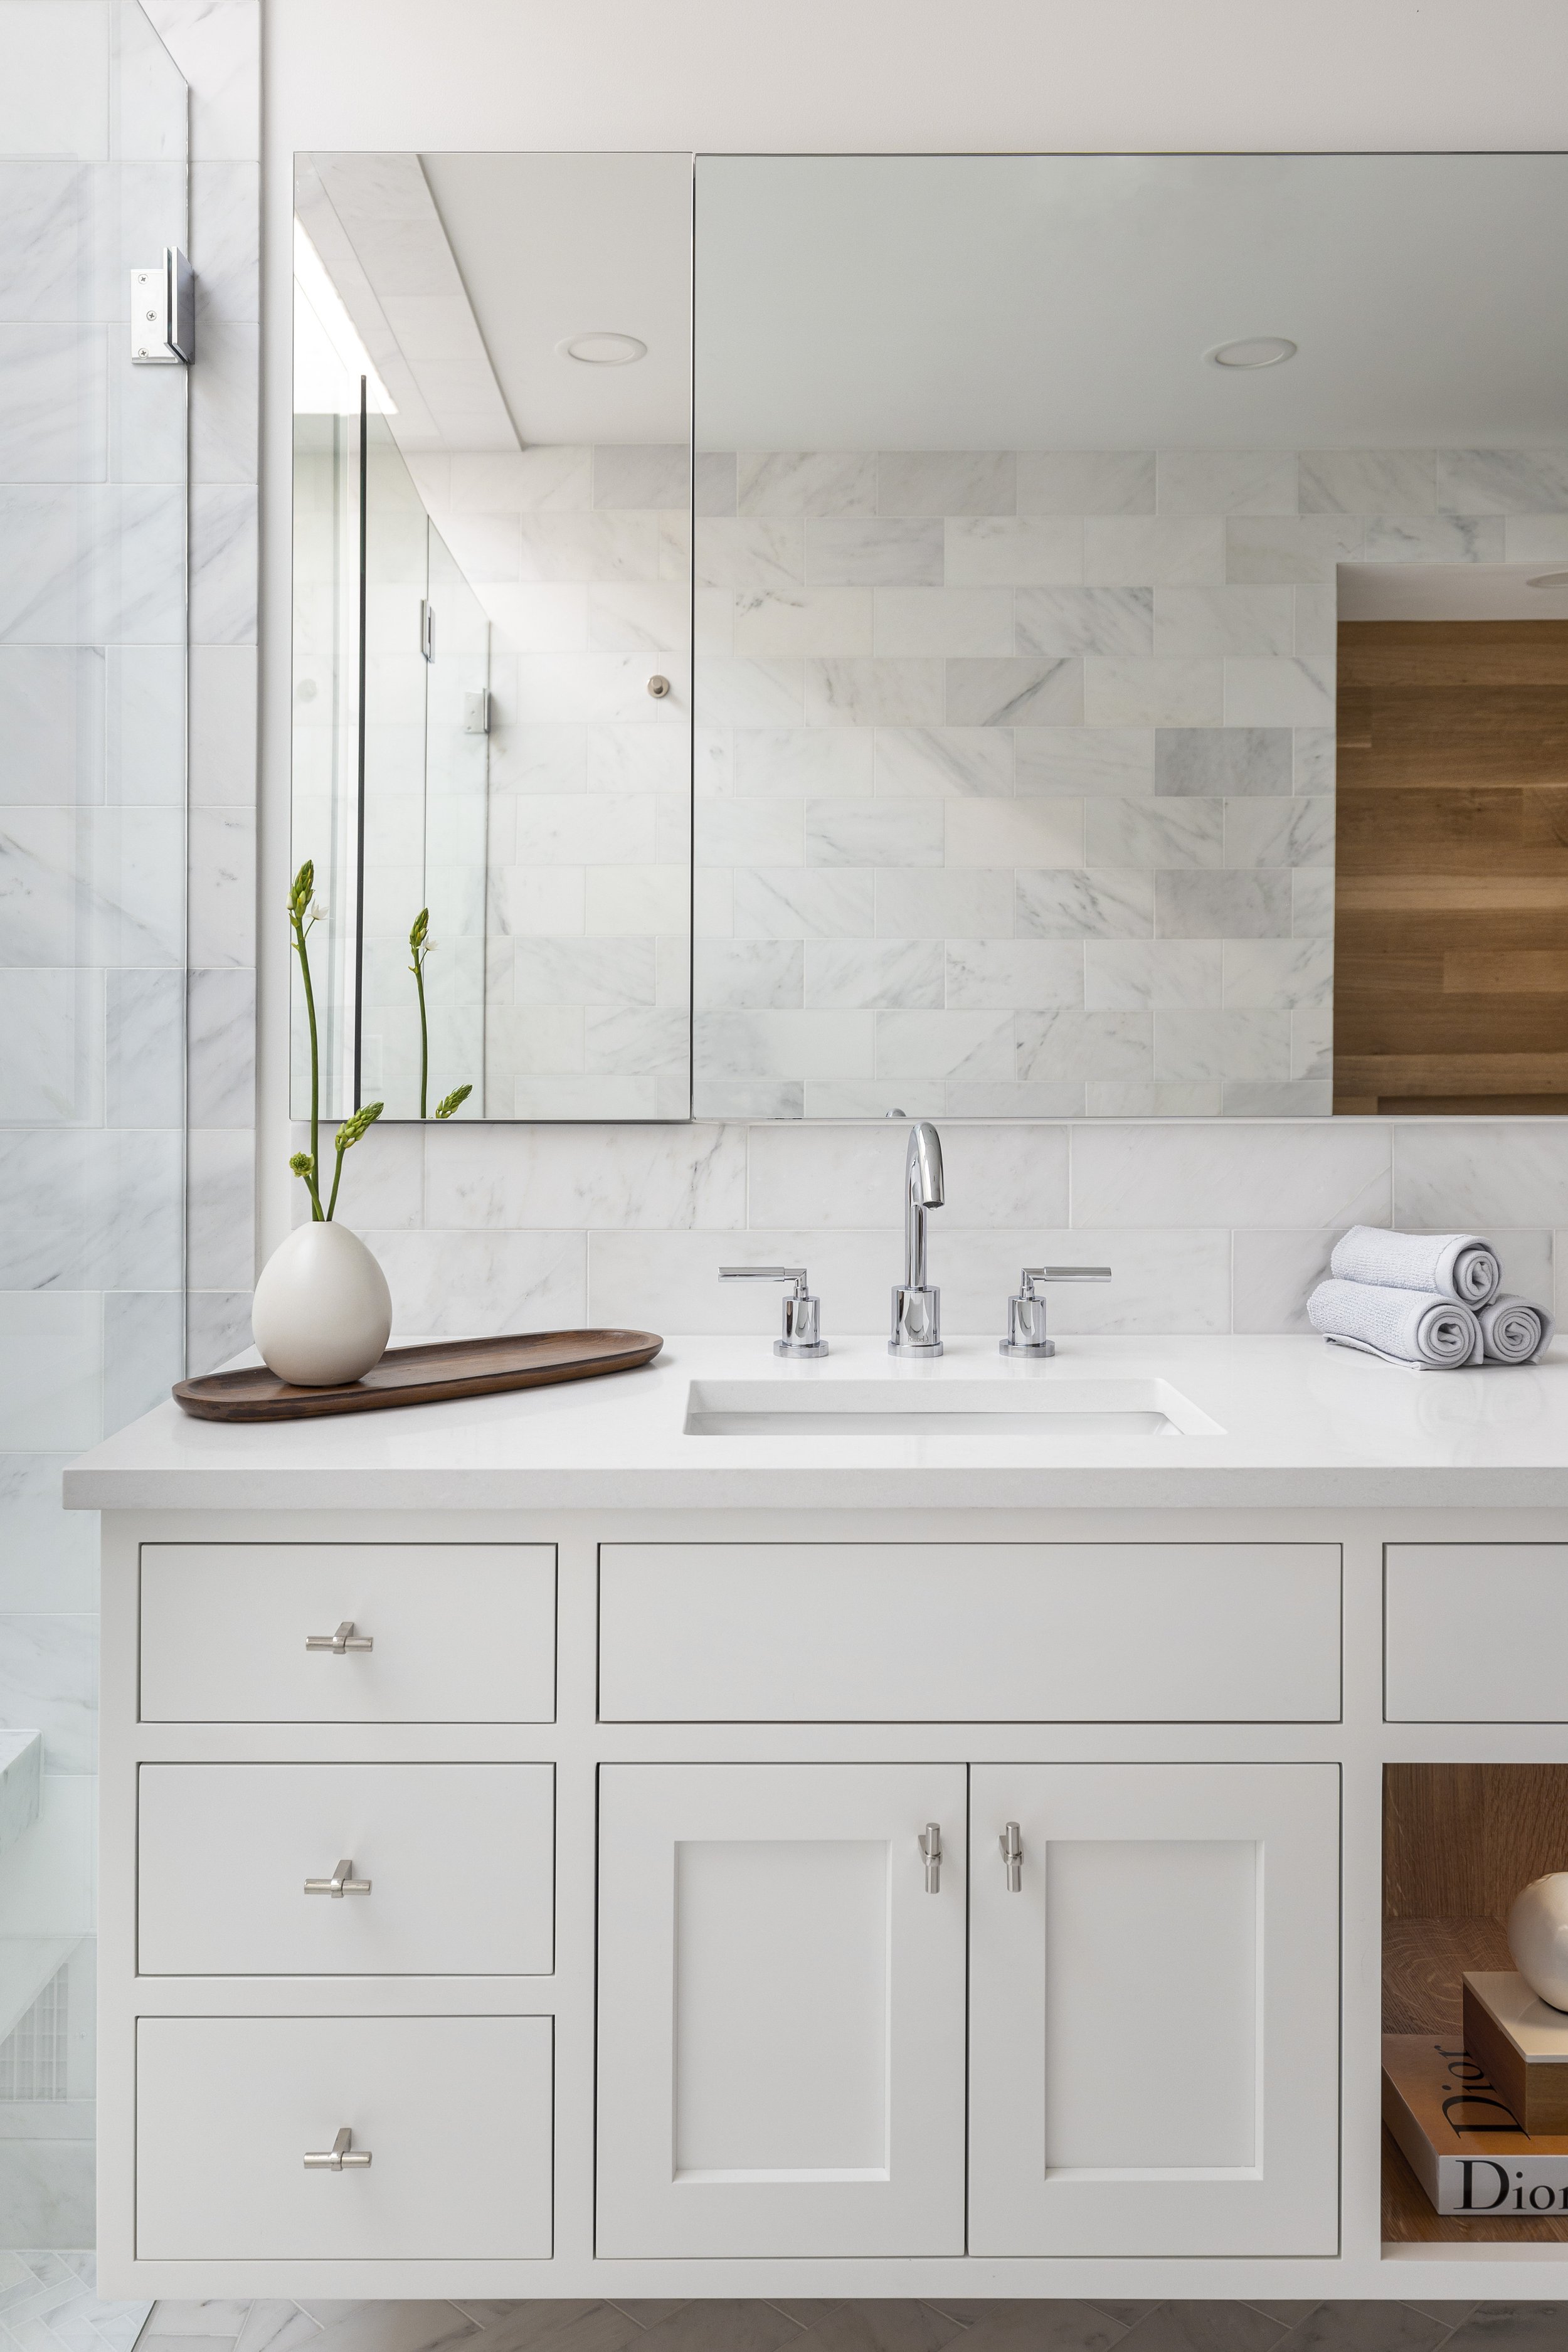 04-img-Vanity-Marble-Wood-Bathroom-Design.jpg